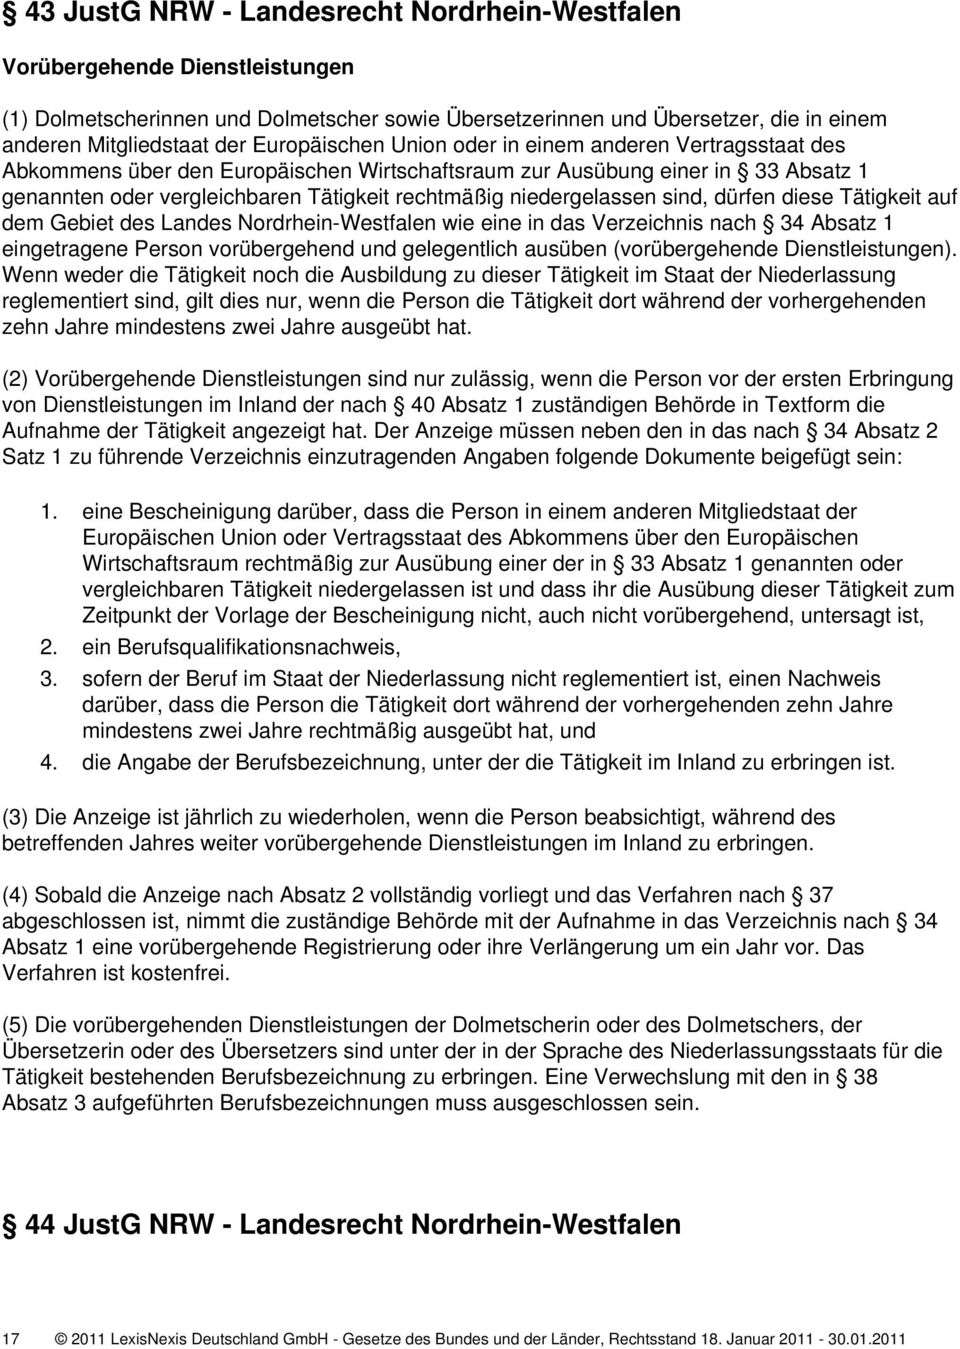 niedergelassen sind, dürfen diese Tätigkeit auf dem Gebiet des Landes Nordrhein-Westfalen wie eine in das Verzeichnis nach 34 Absatz 1 eingetragene Person vorübergehend und gelegentlich ausüben